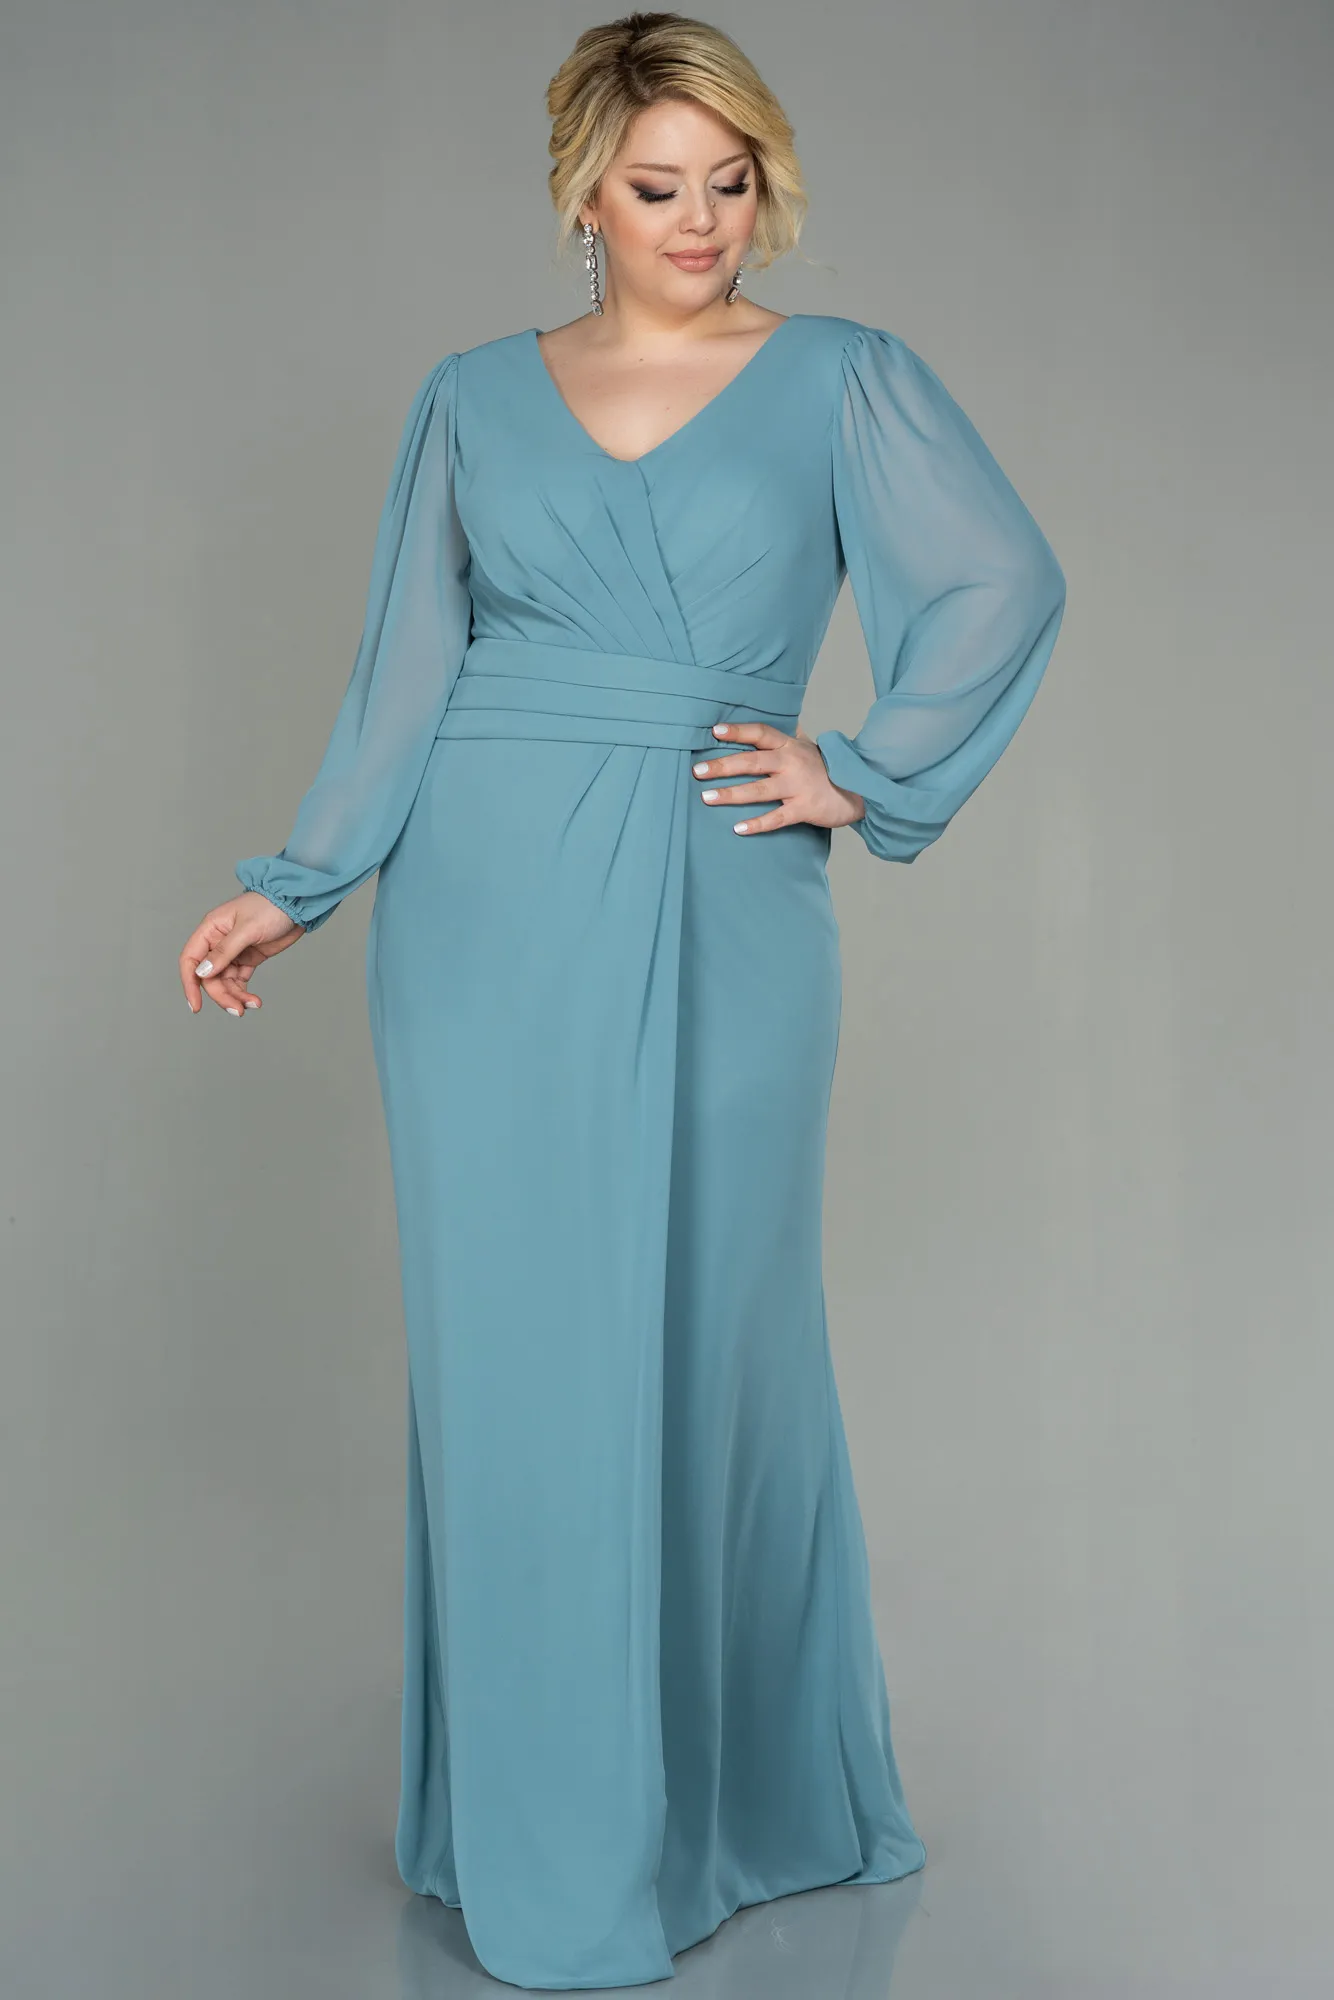 Turquoise-Long Chiffon Plus Size Evening Dress ABU2763